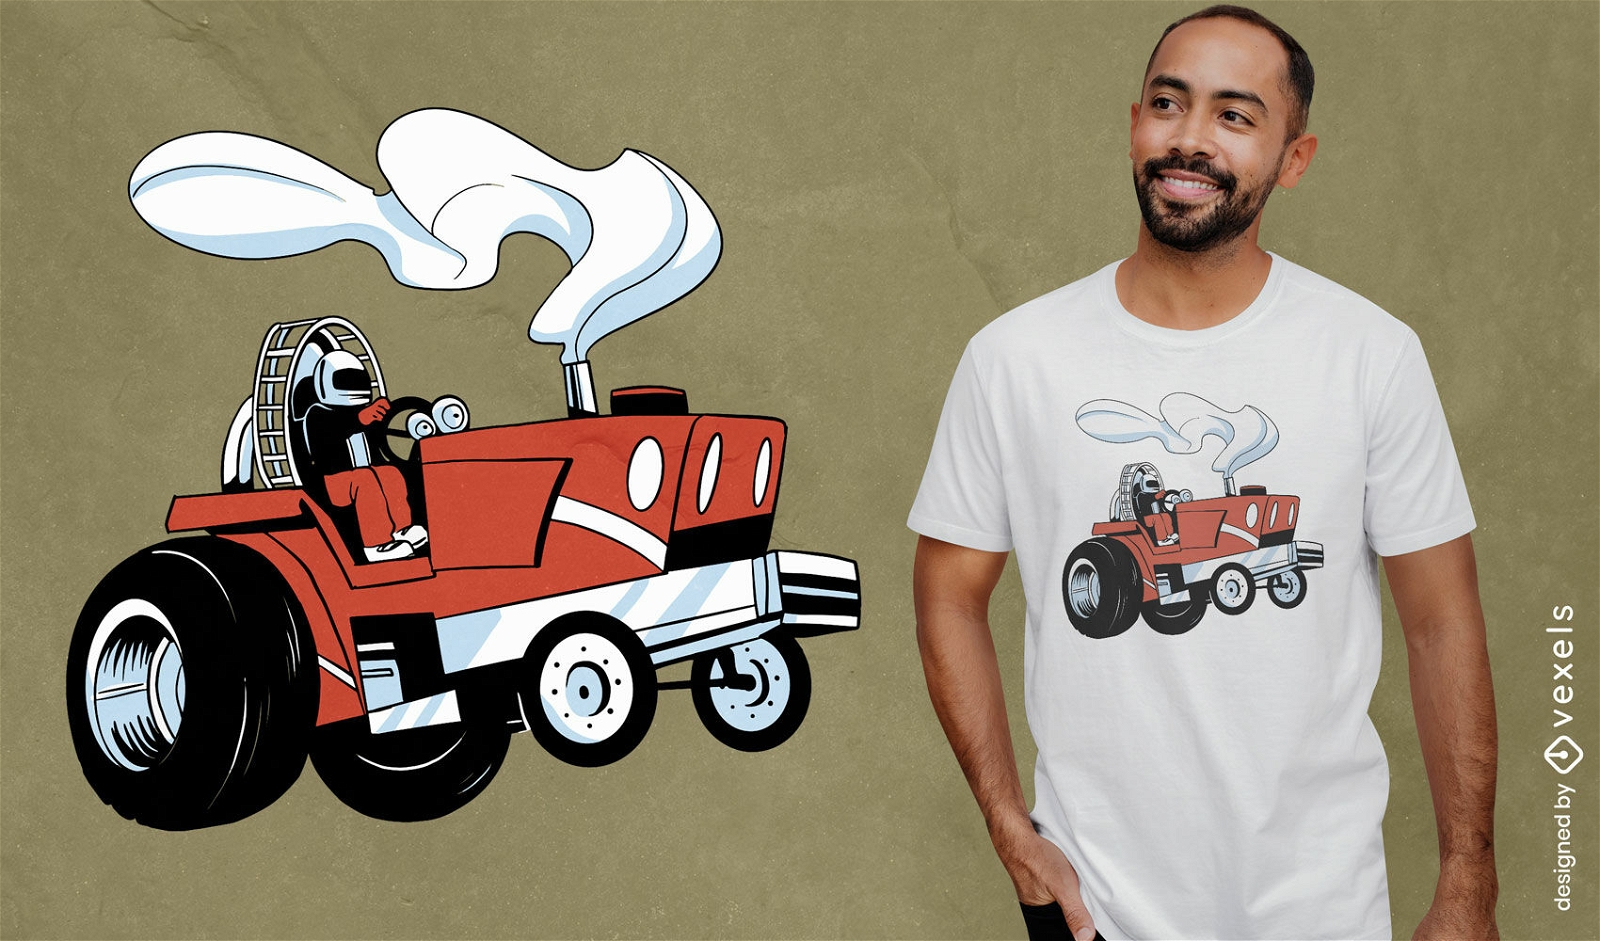 T-Shirt-Design f?r den Tractor-Pull-Wettbewerb